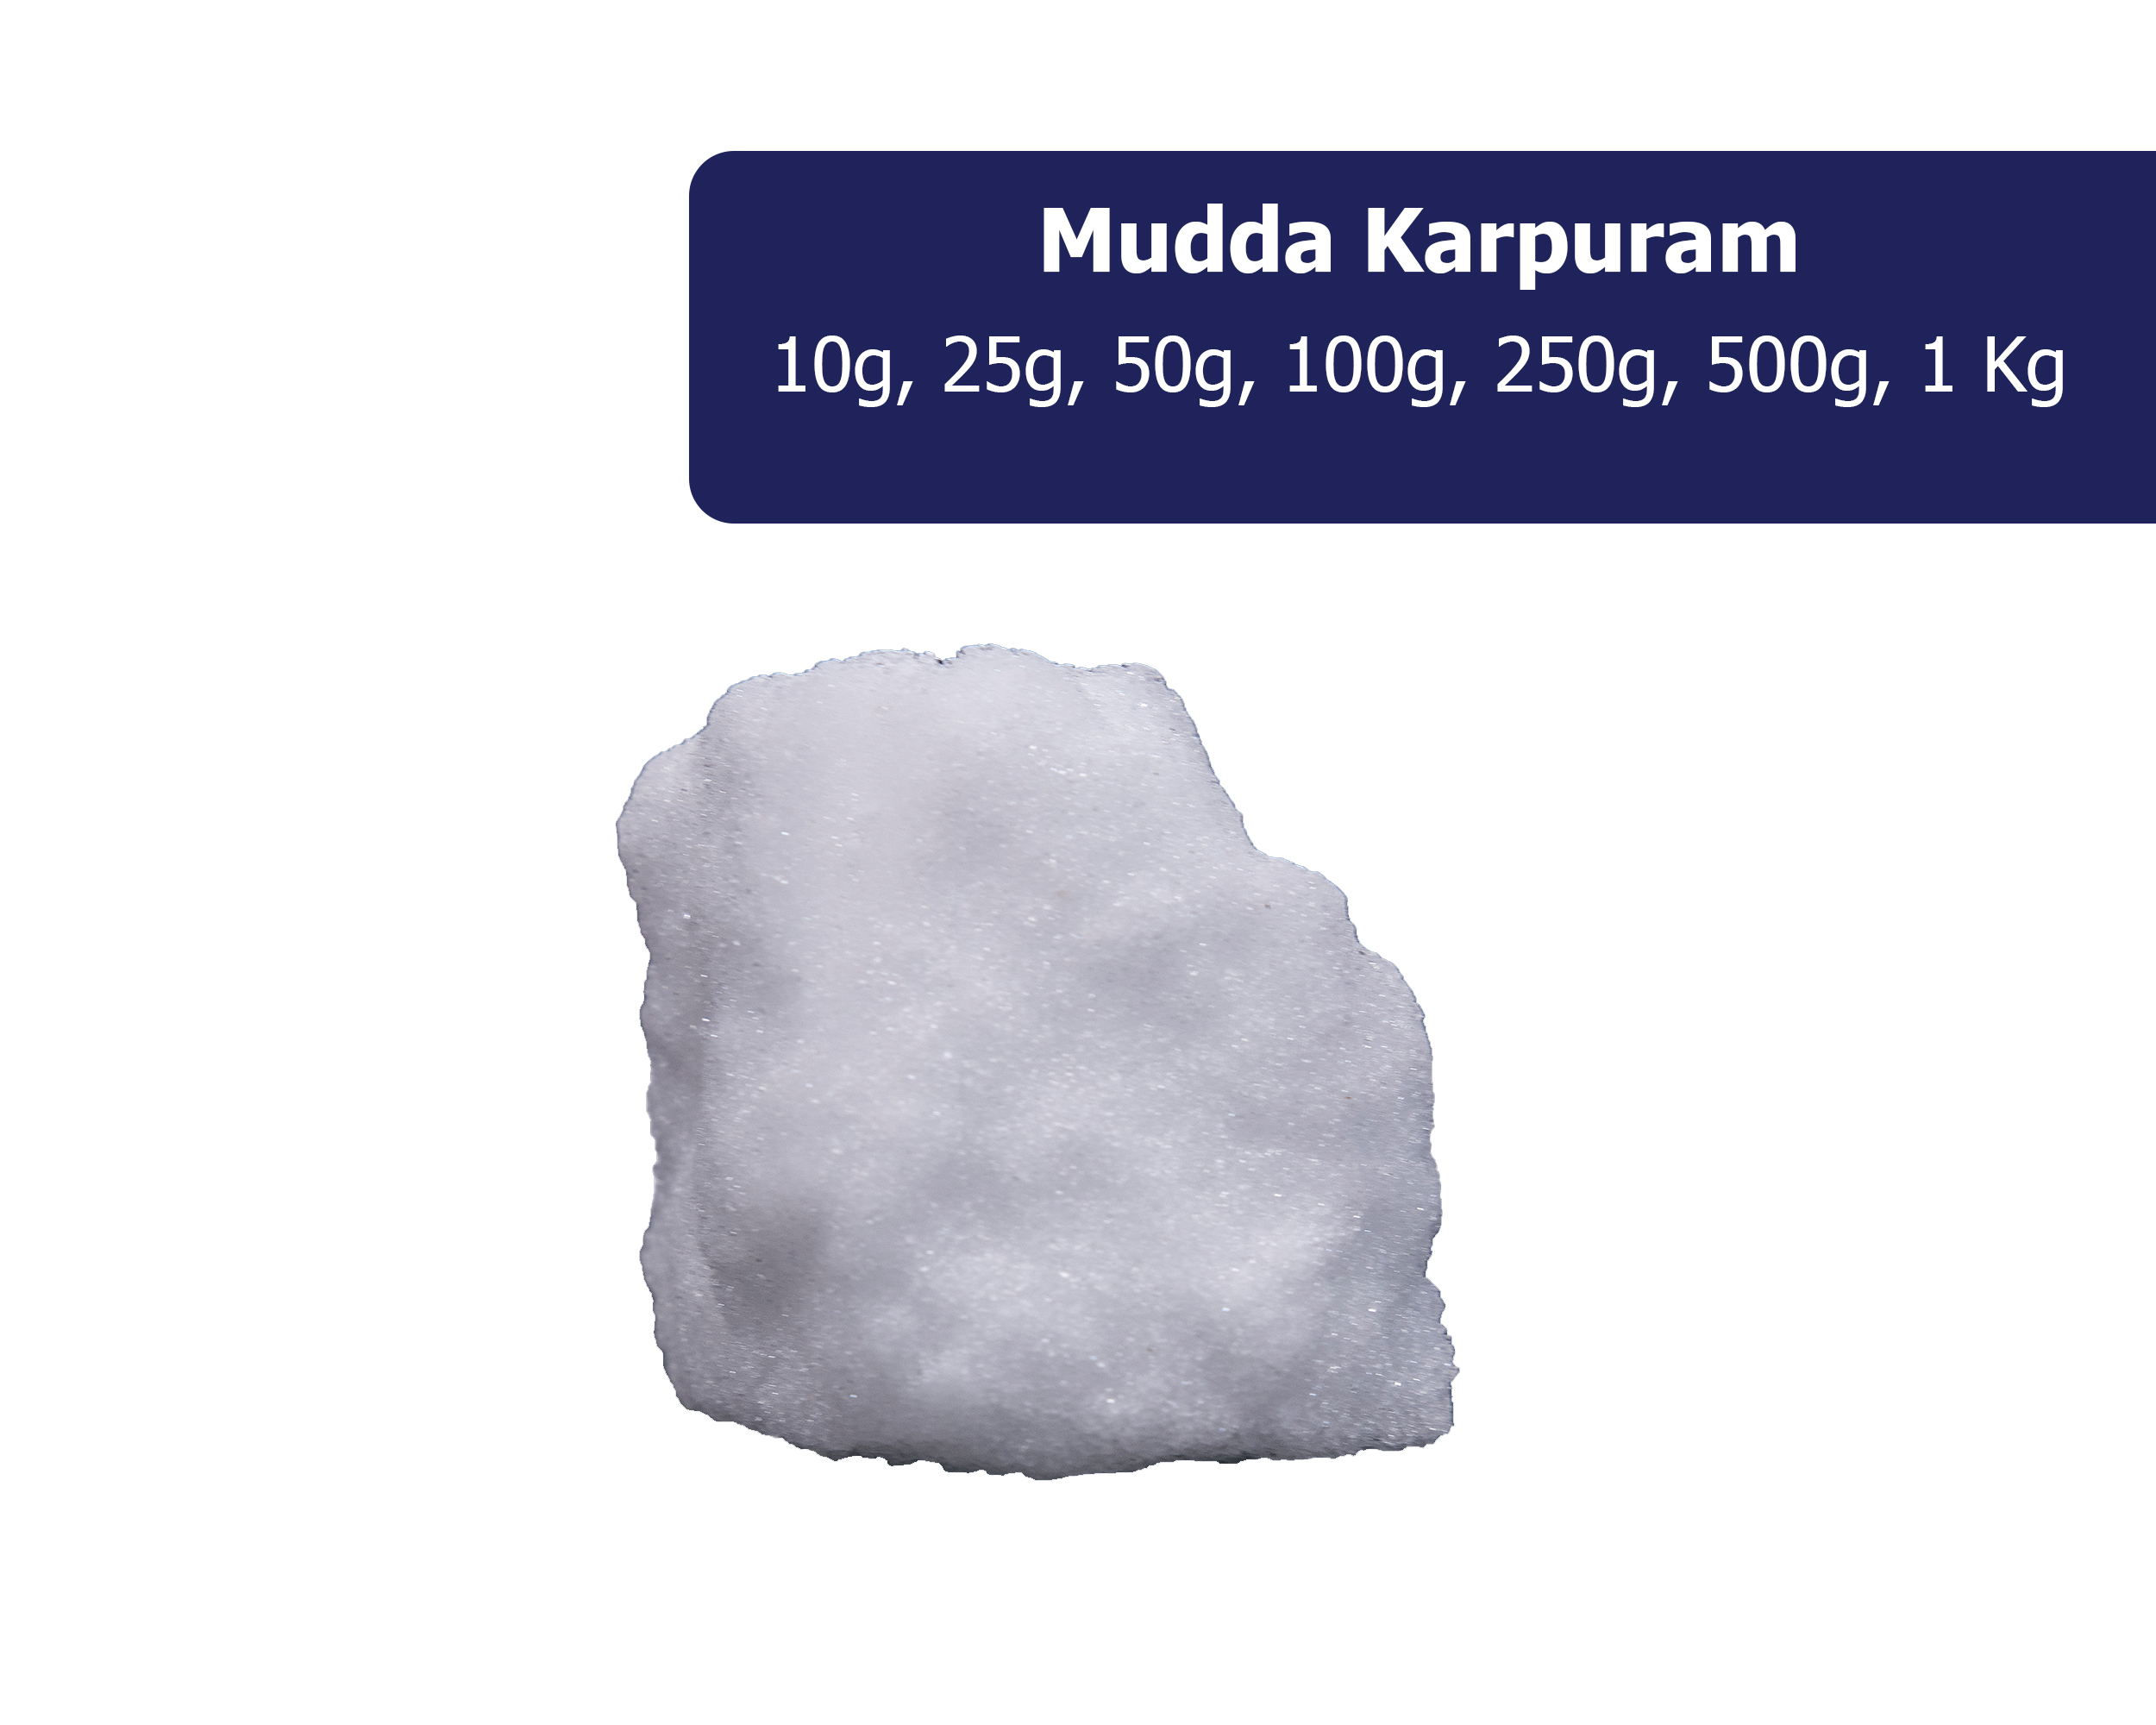 Mudda Karpuram